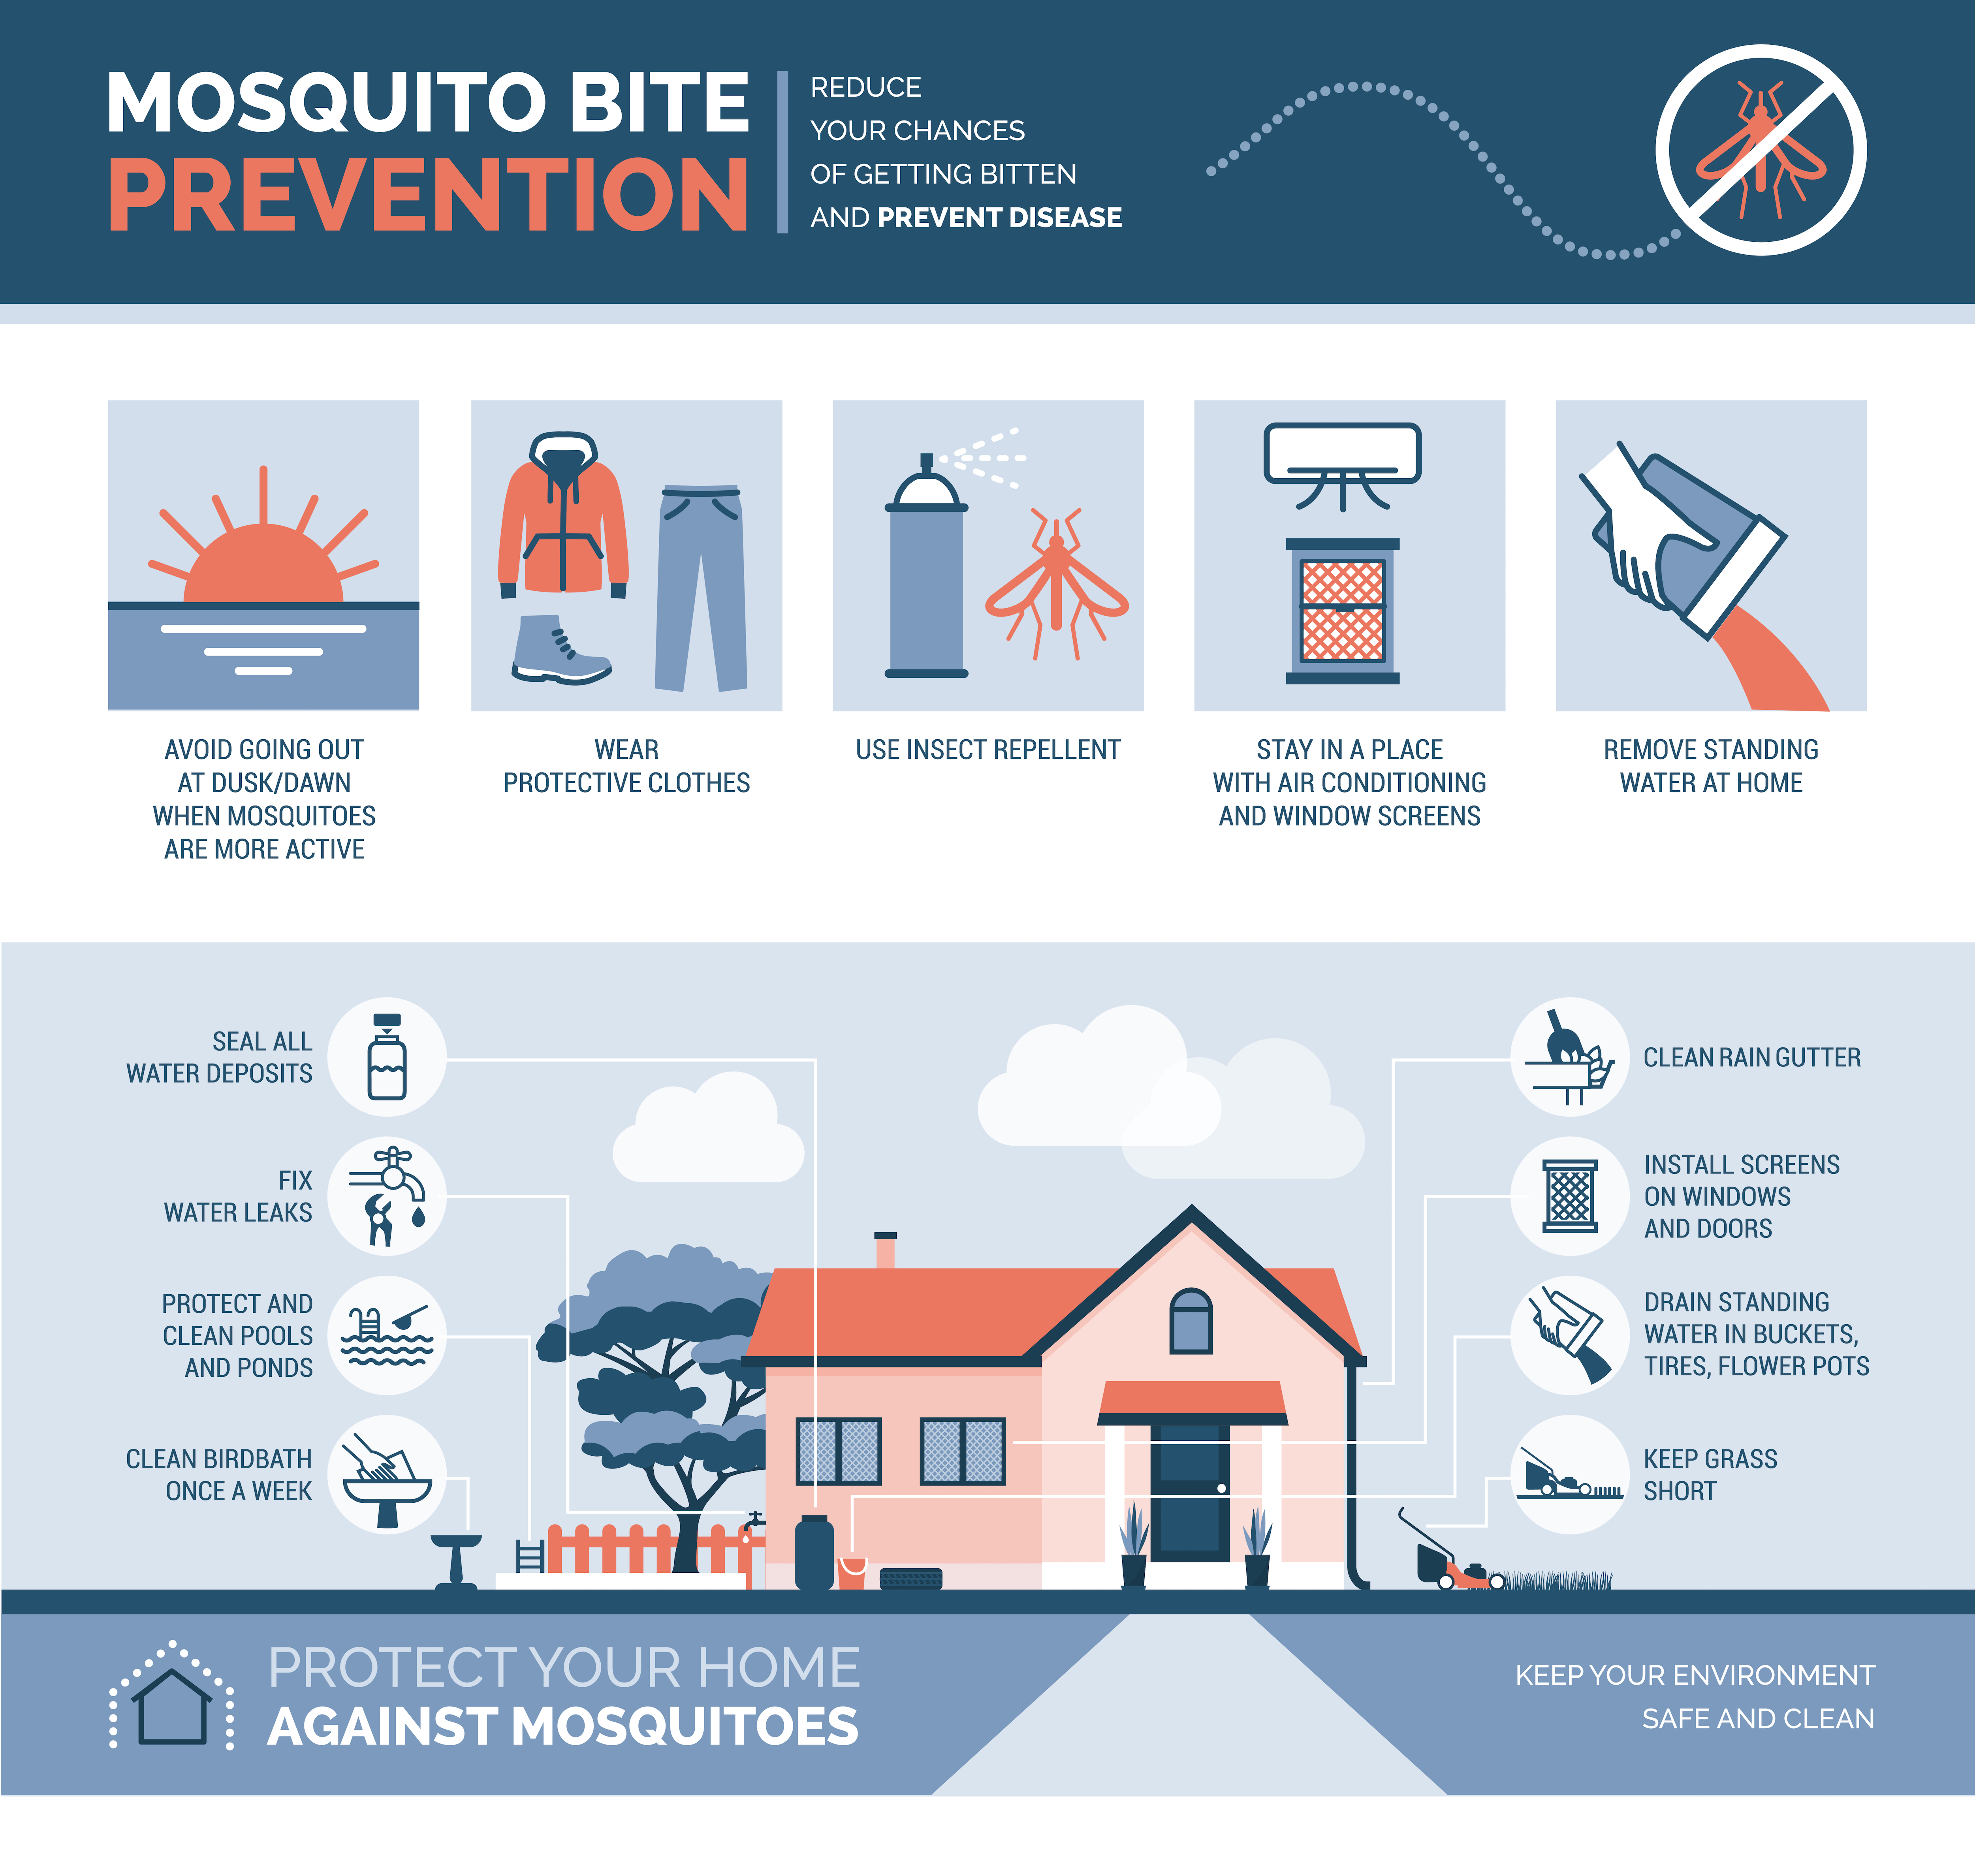 Mosquito Bite Prevention - Dengue Fever Treatment @ MDIMC